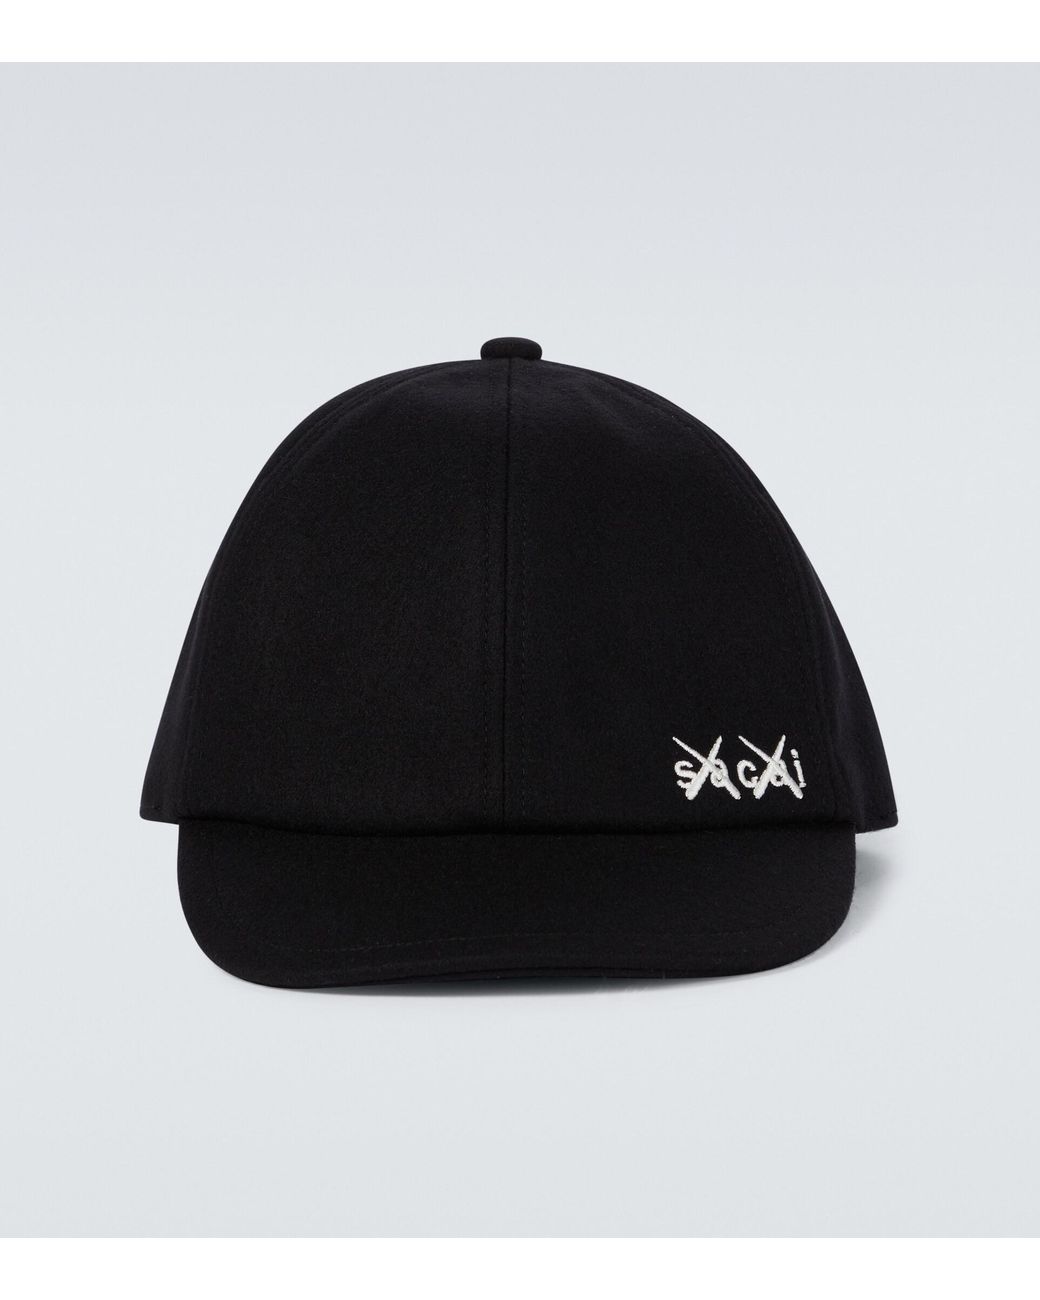 44％割引ブラック系限定版 sacai × kaws melton cap size3 キャップ 帽子ブラック系-SEMOLA.COM.MX